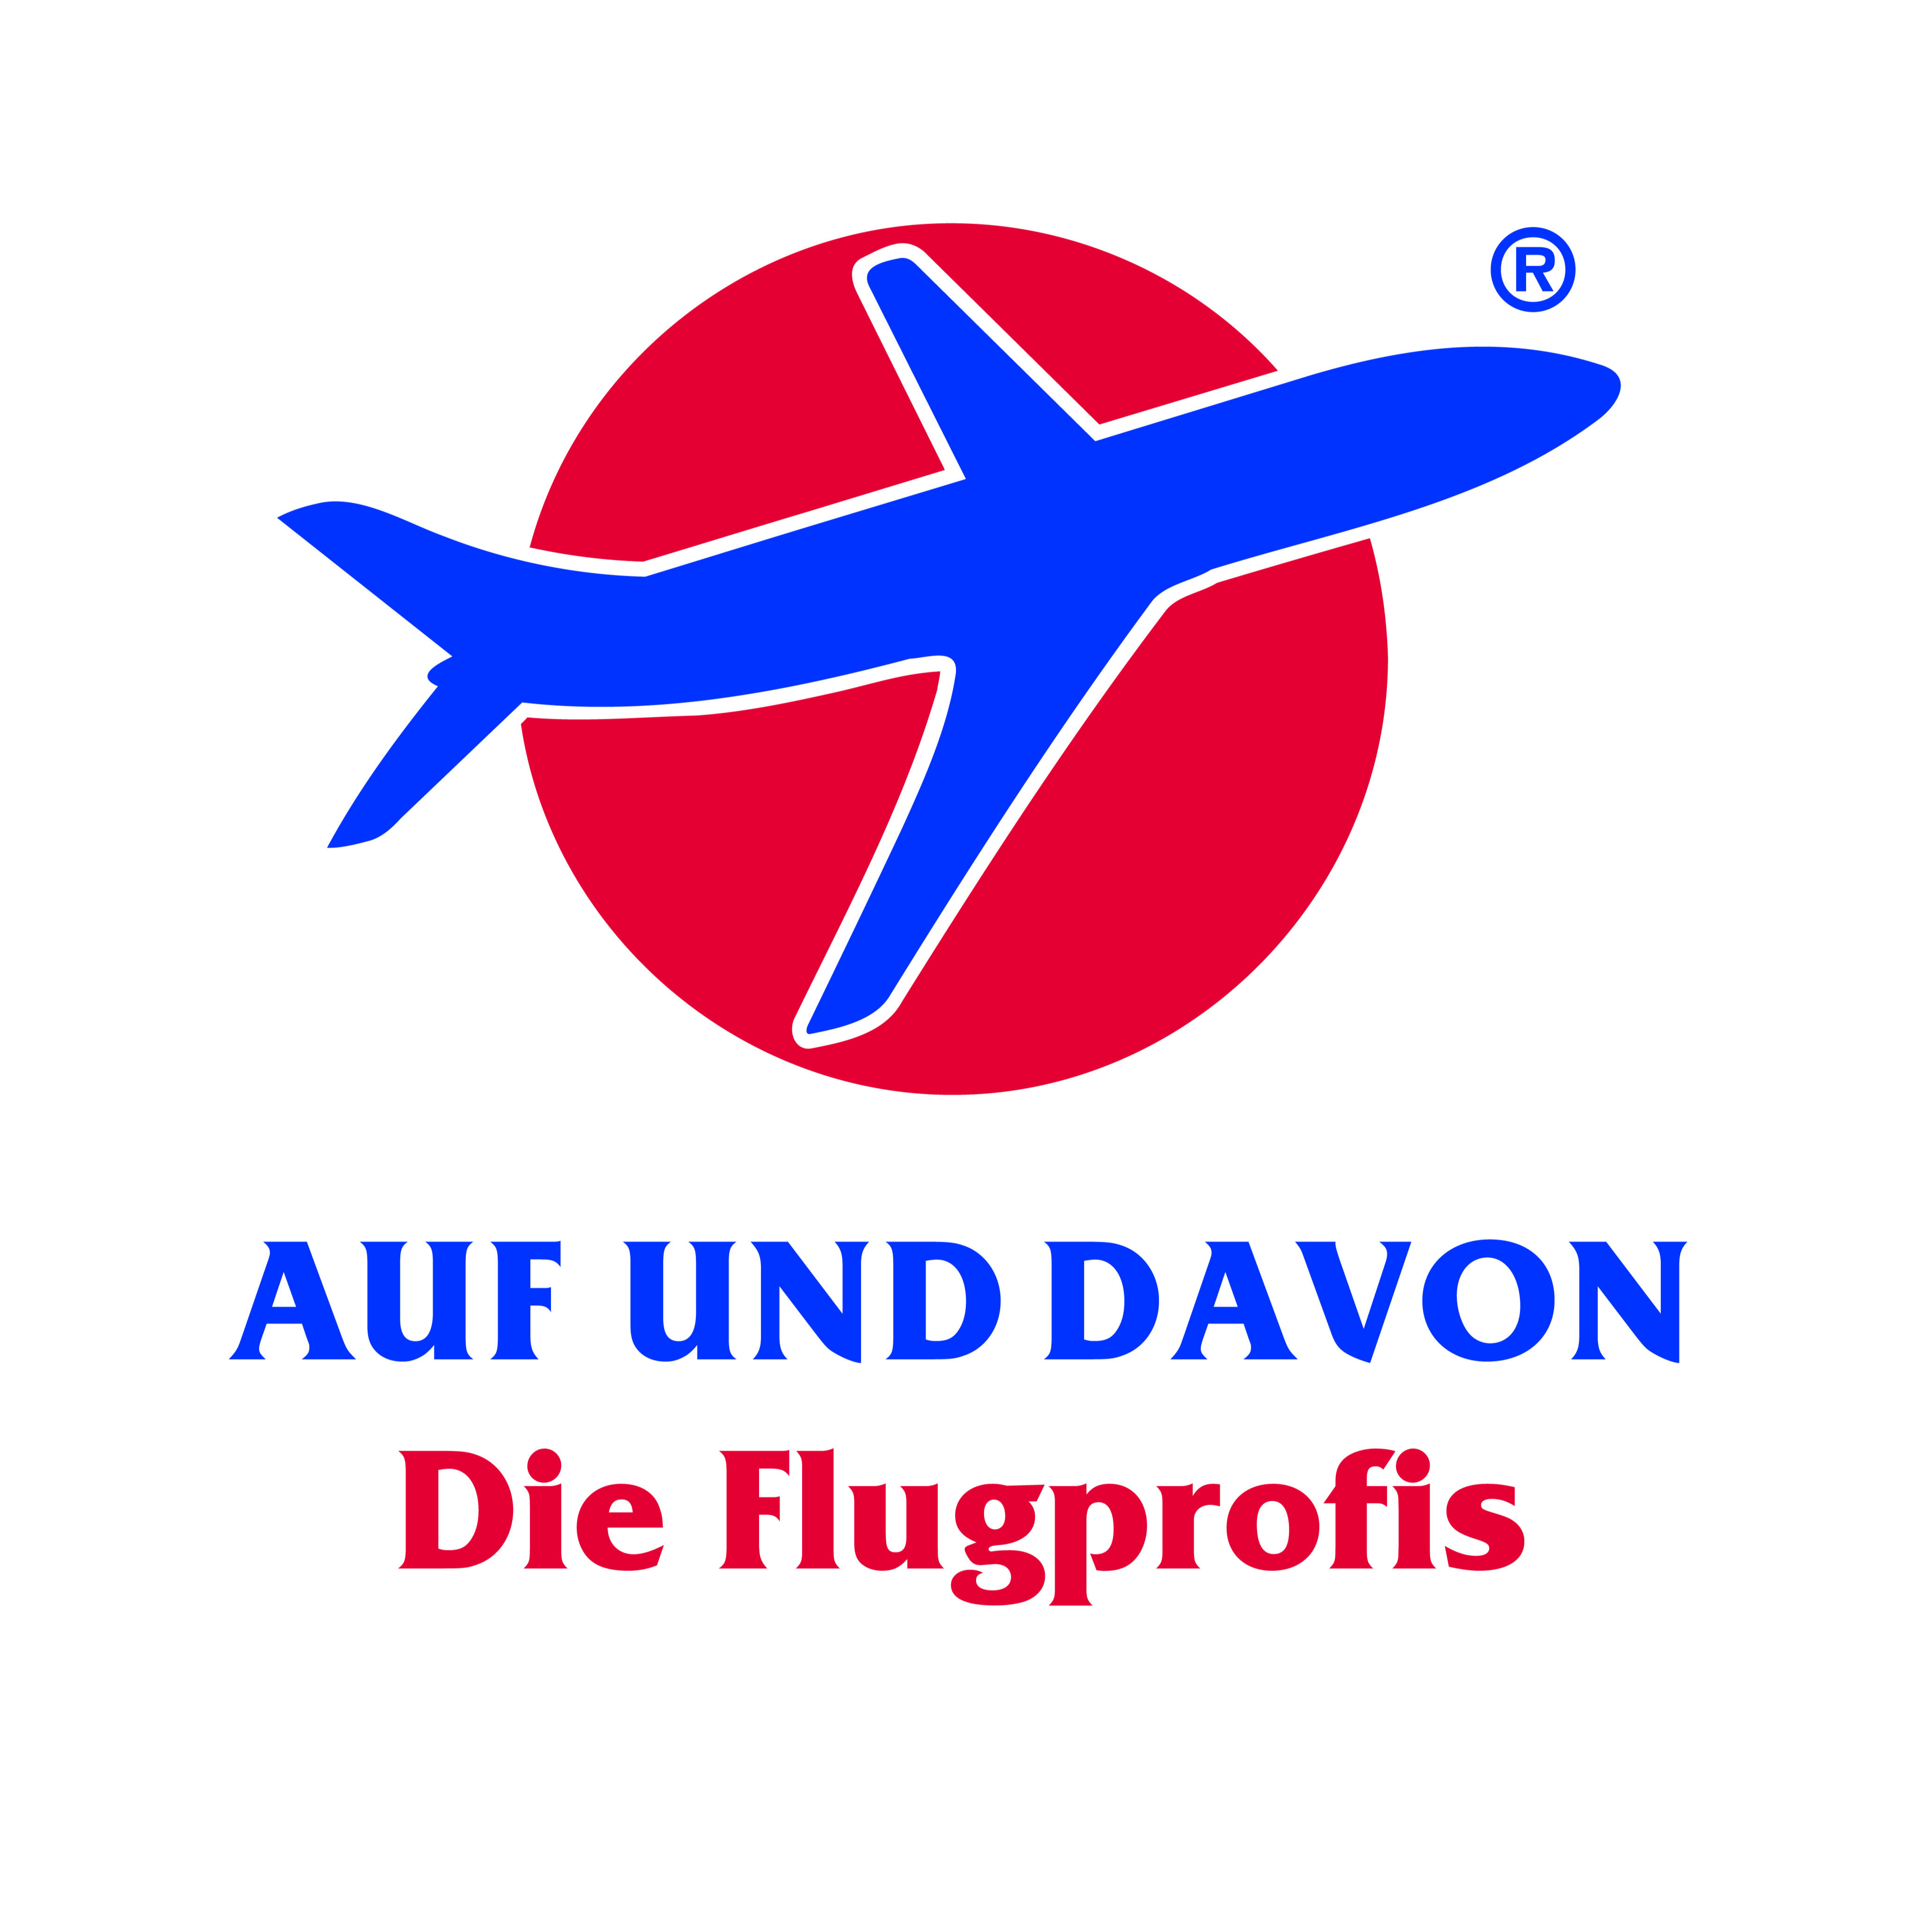 AUF UND DAVON - Die Flugprofis Logo